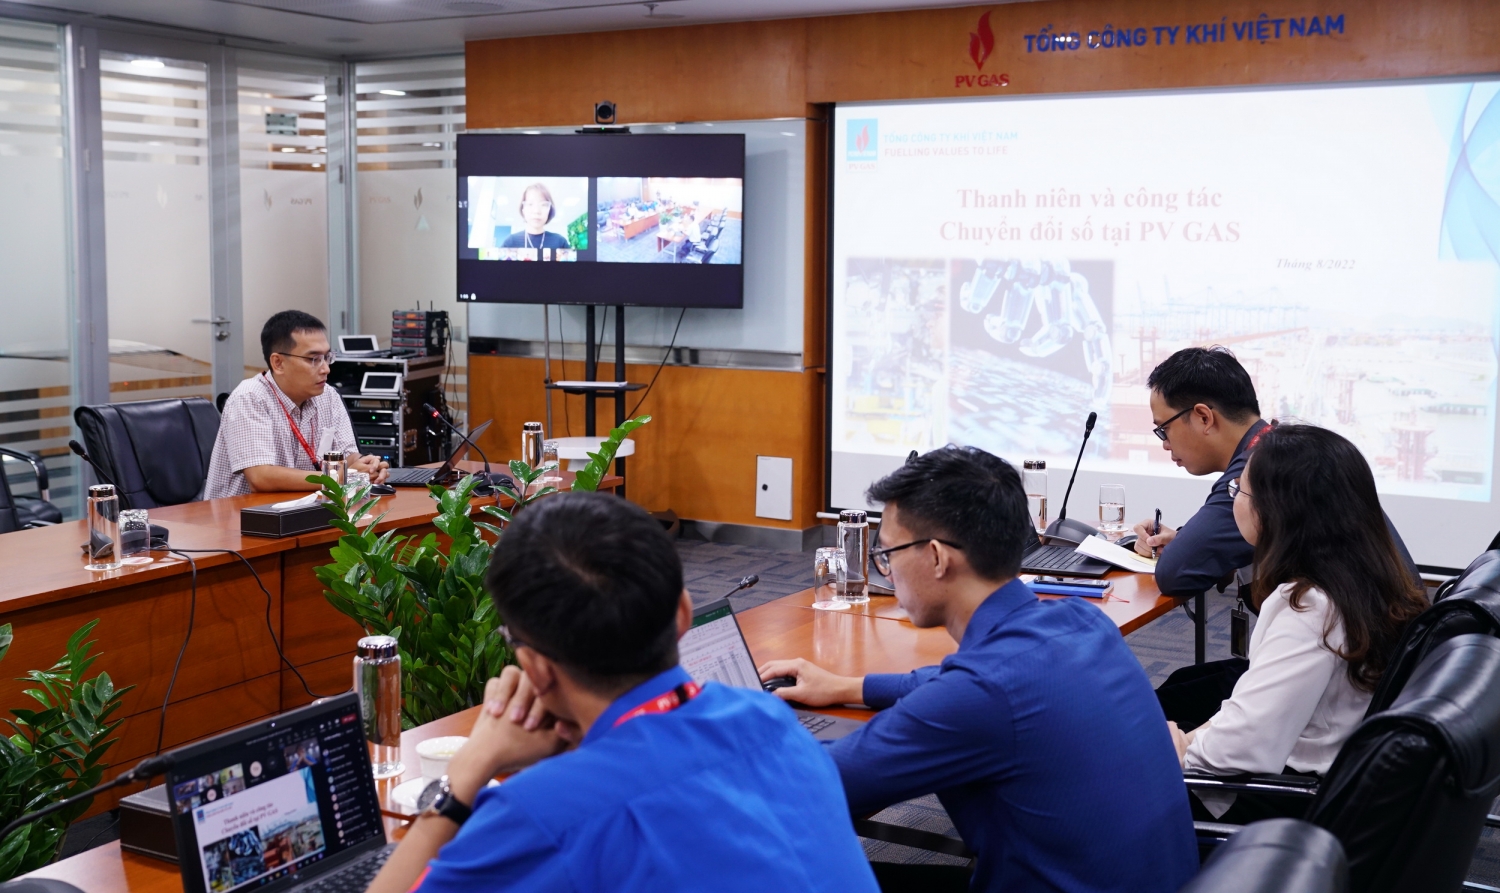 Hội thảo được tổ chức trực tiếp và trực tuyến đến các đầu cầu Vũng Tàu, Cà Mau, Hà Nội, Hải Phòng của PV GAS